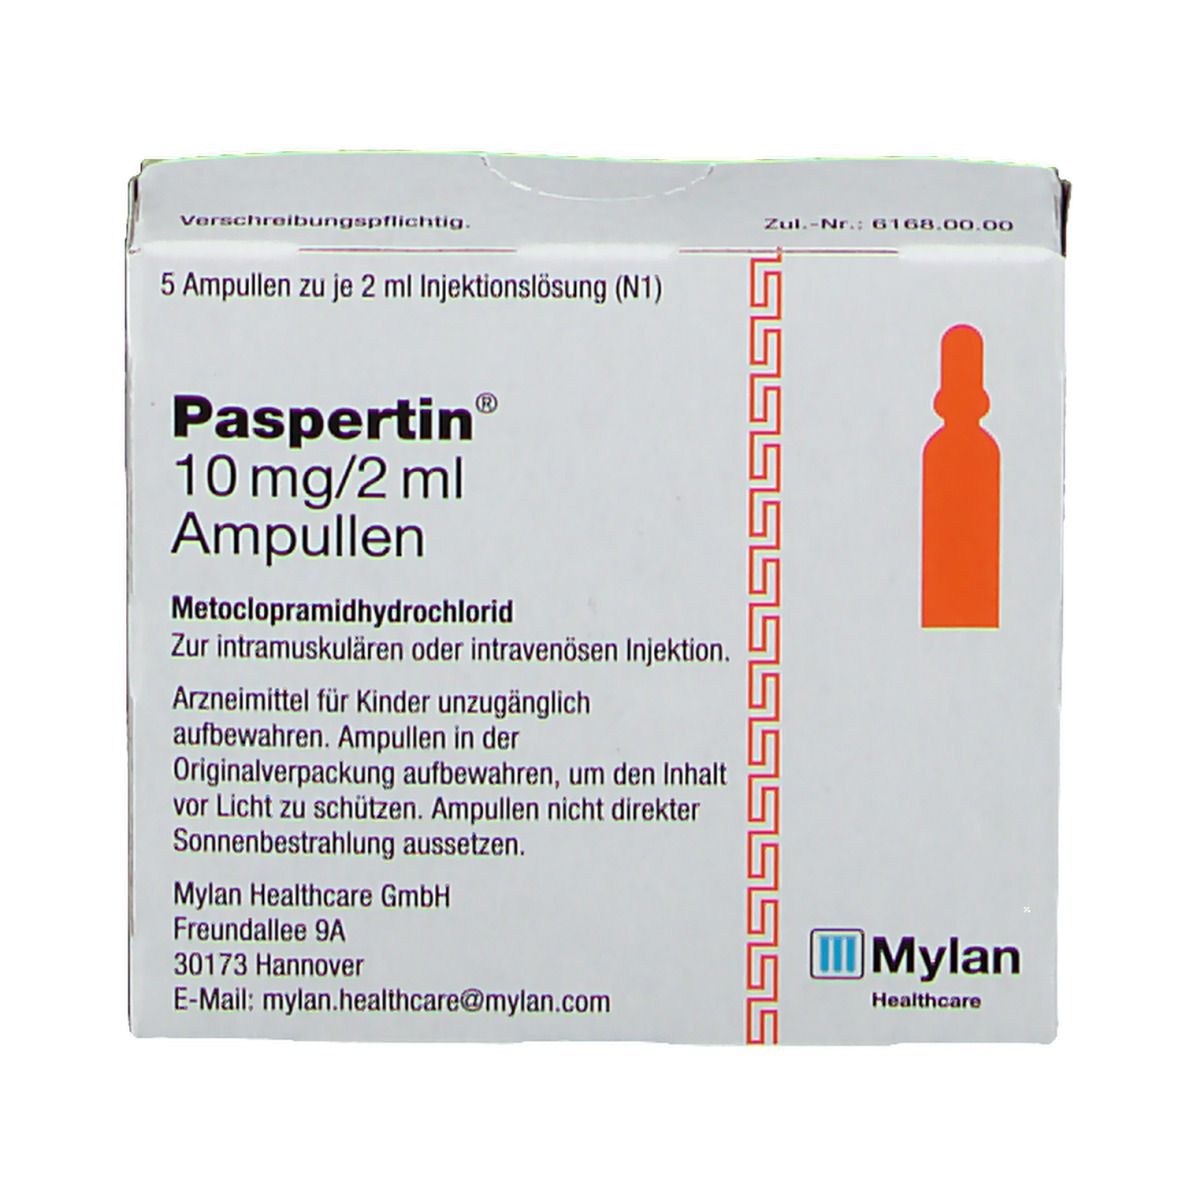 Paspertin® 10 mg/2 ml